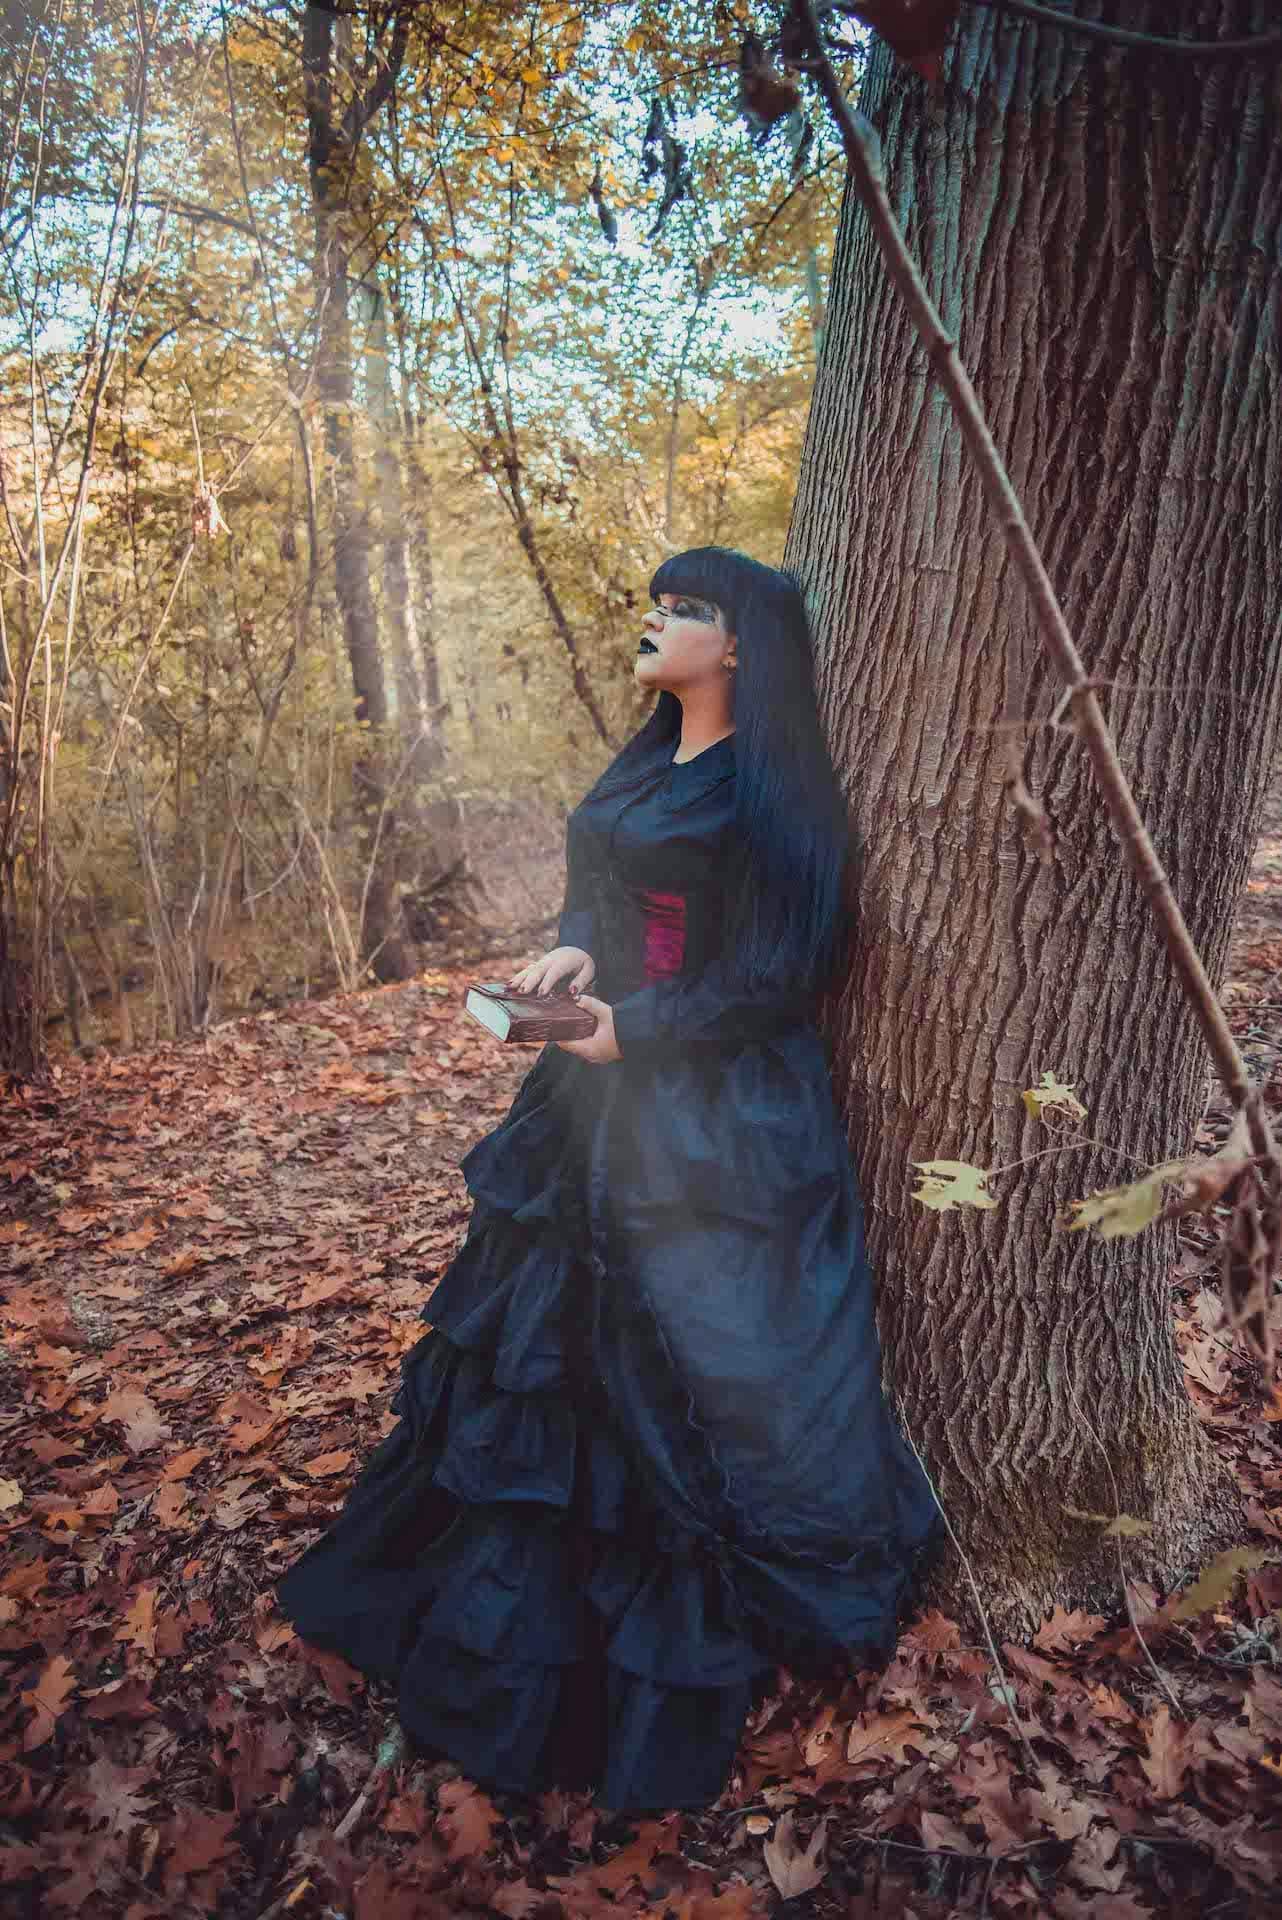 strega bosco montello vestito nero gotico grimorio albero